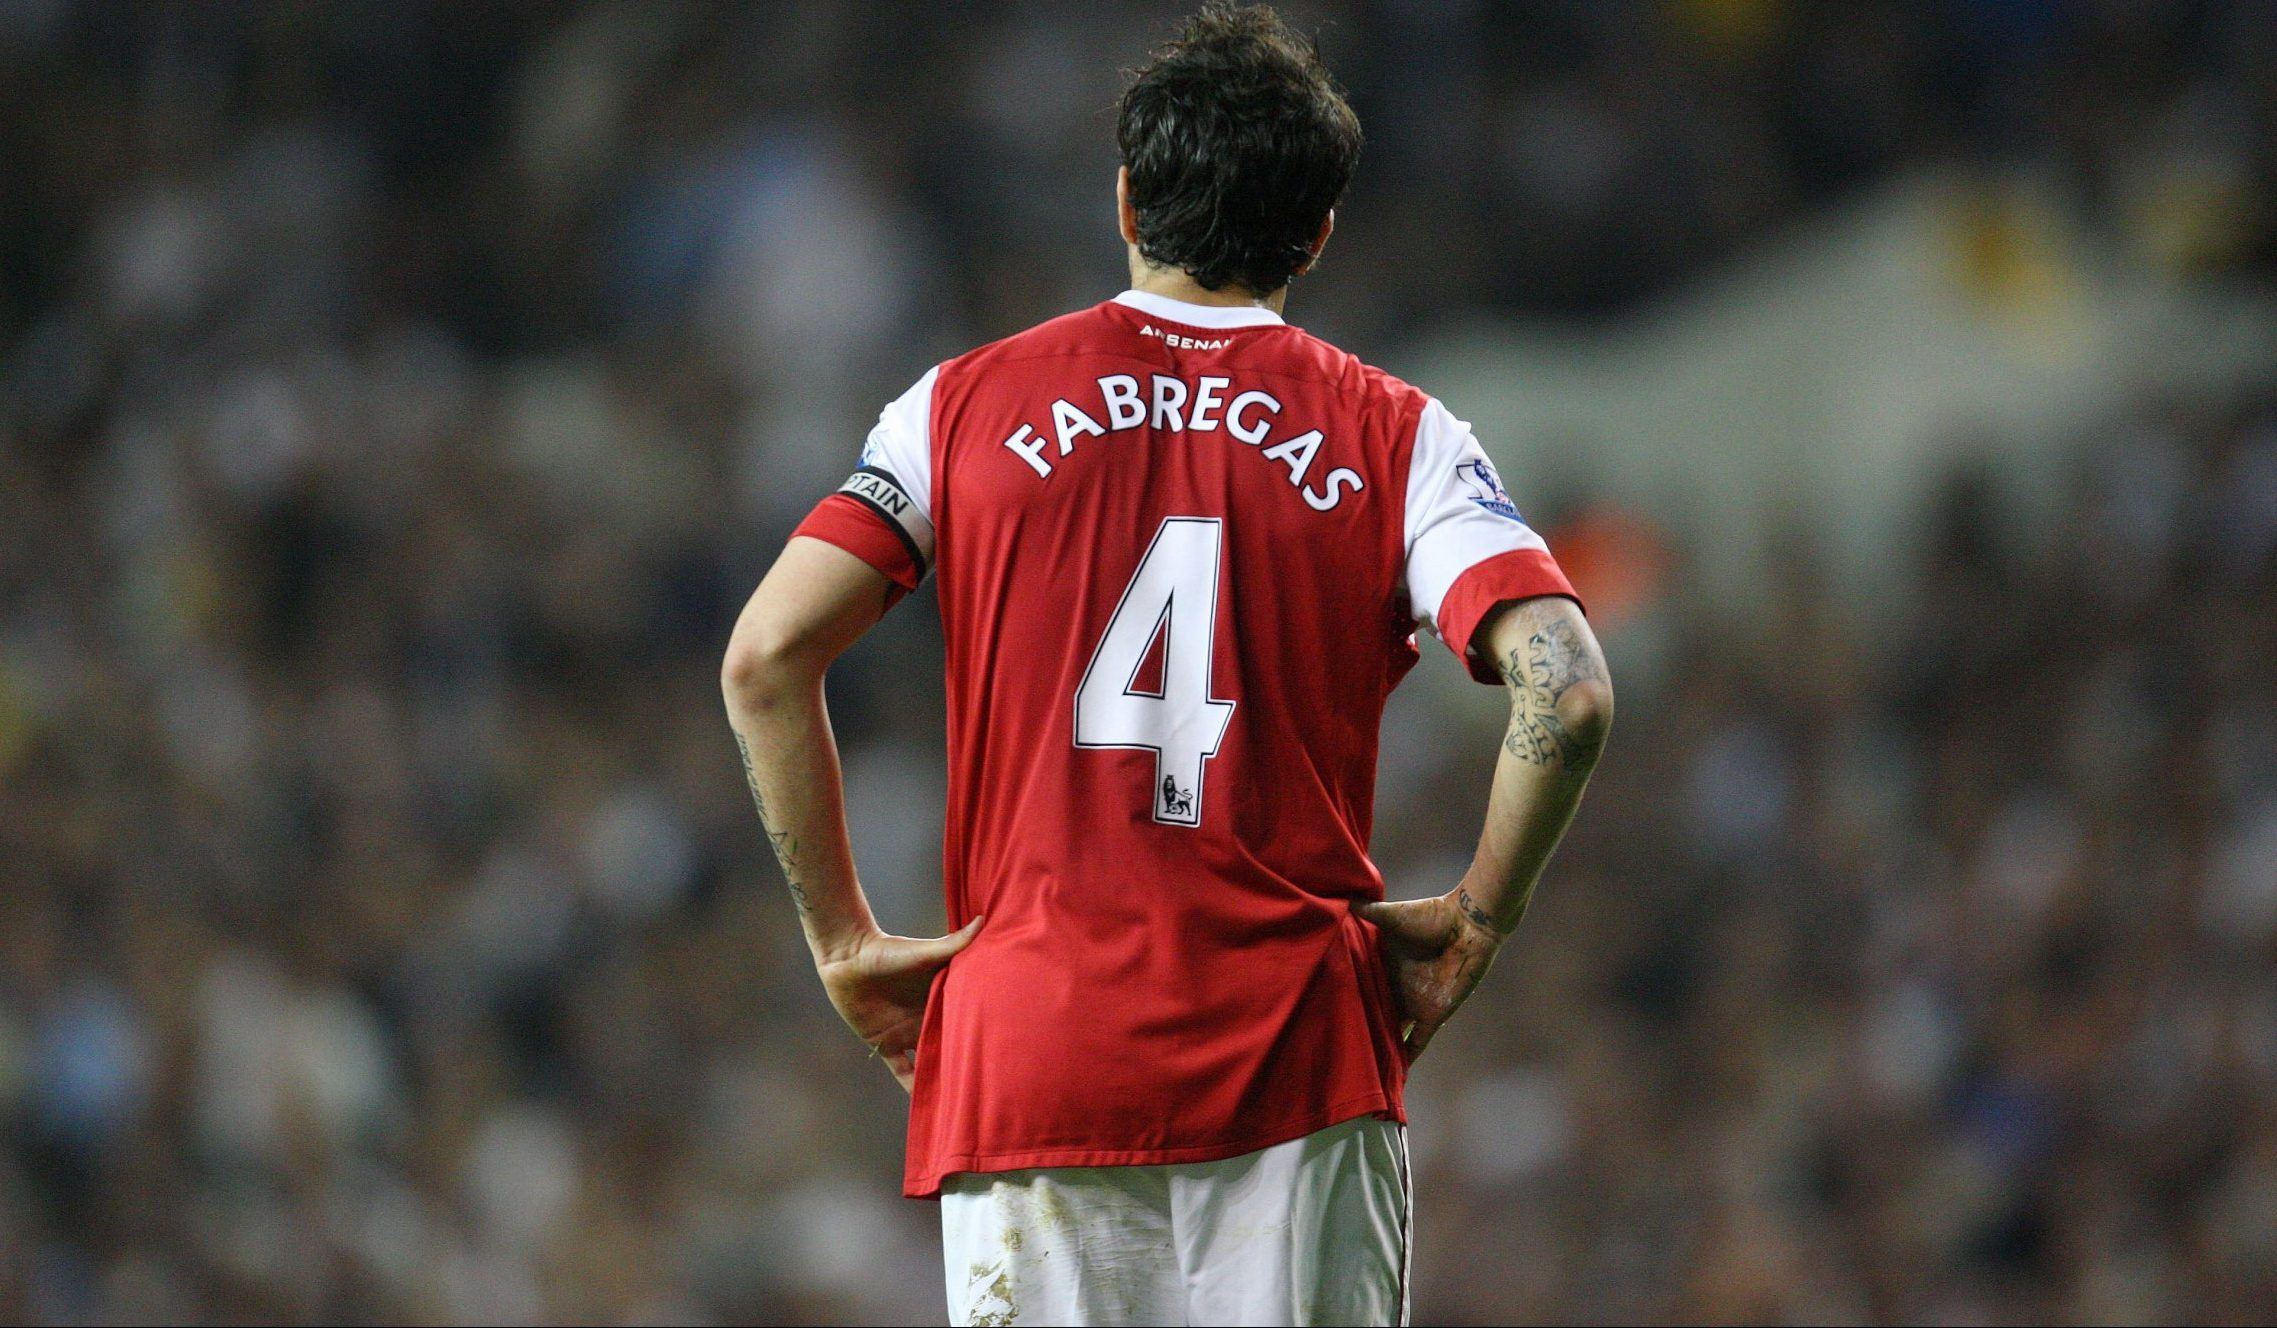 Former Arsenal midfielder Cesc Fabregas looks on against Spurs